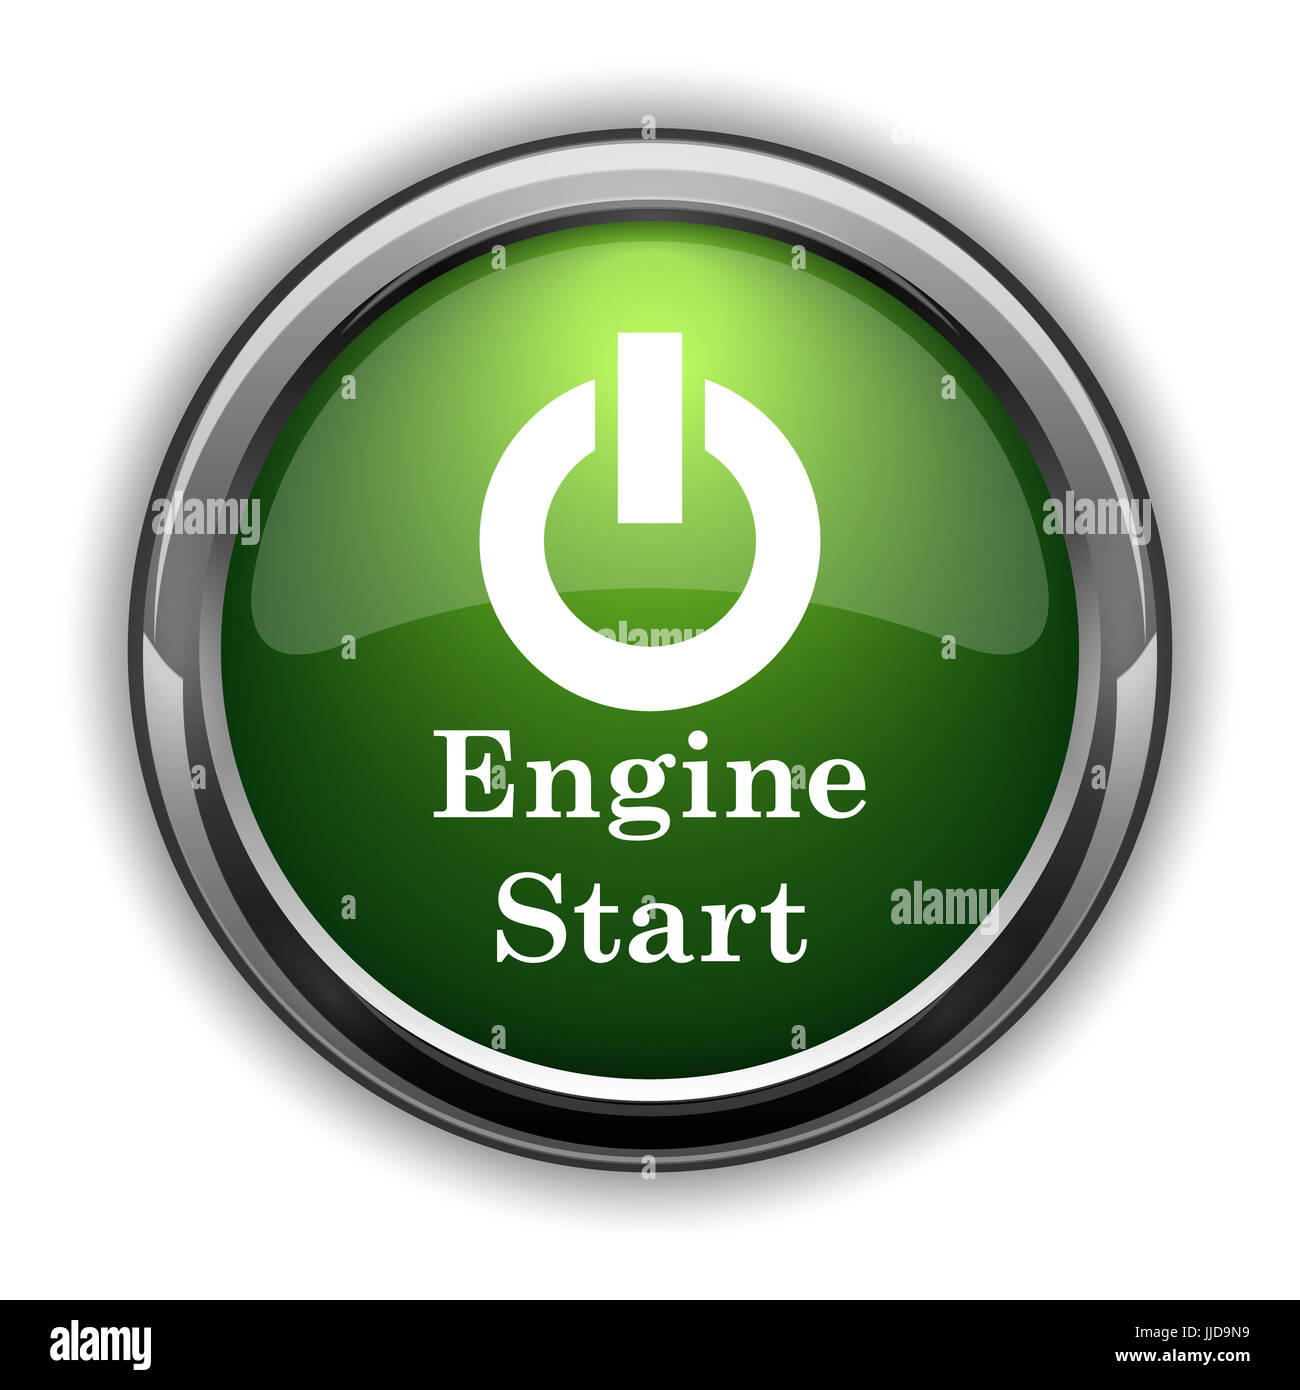 https://c8.alamy.com/comp/JJD9N9/engine-start-icon-engine-start-website-button-on-white-background-JJD9N9.jpg